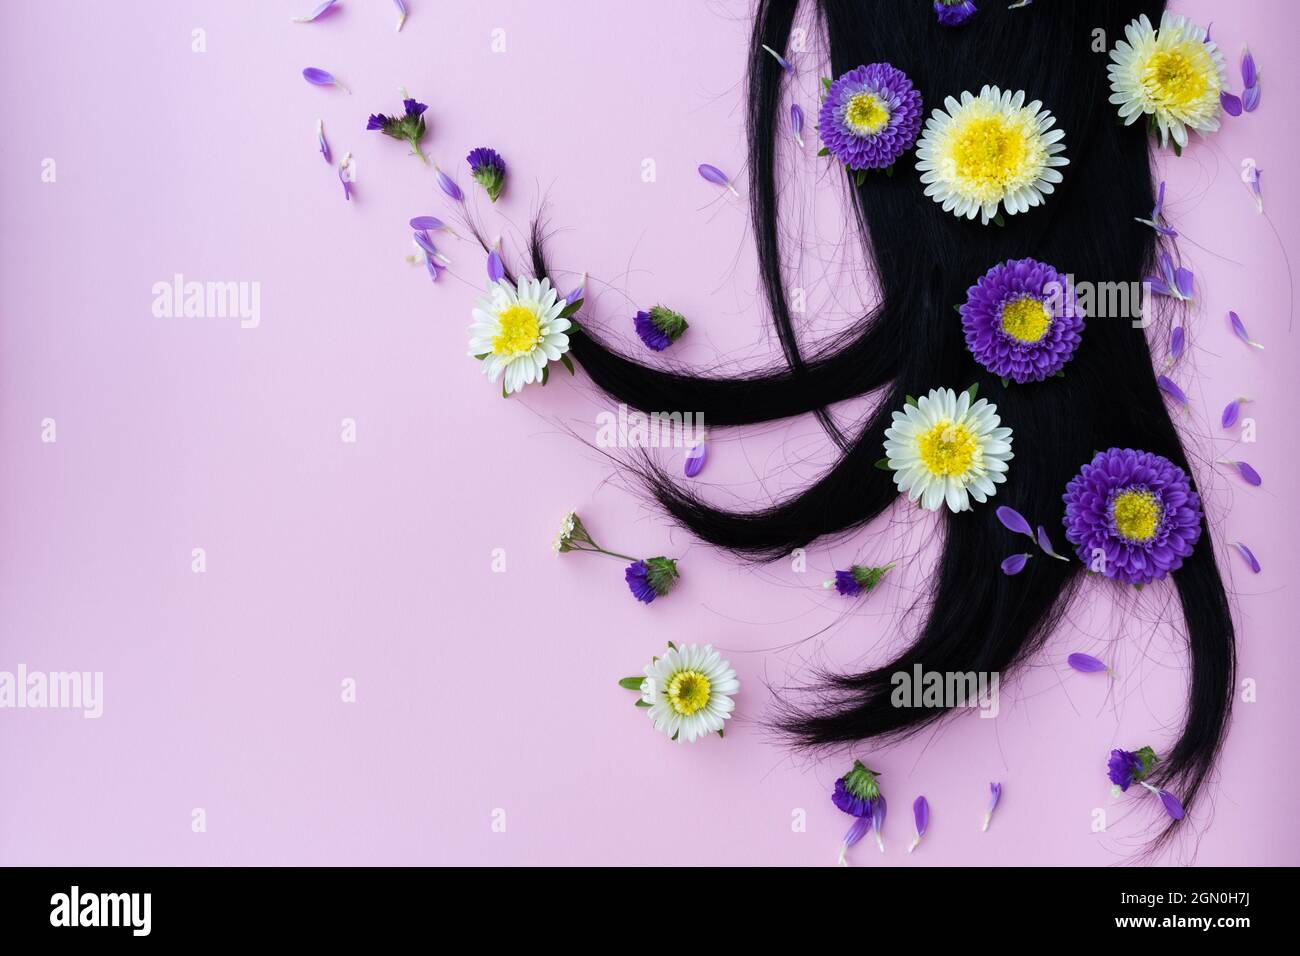 Capelli neri con fiori gialli e lilla e petali su di esso. Concetto di cura dei capelli. Foto Stock